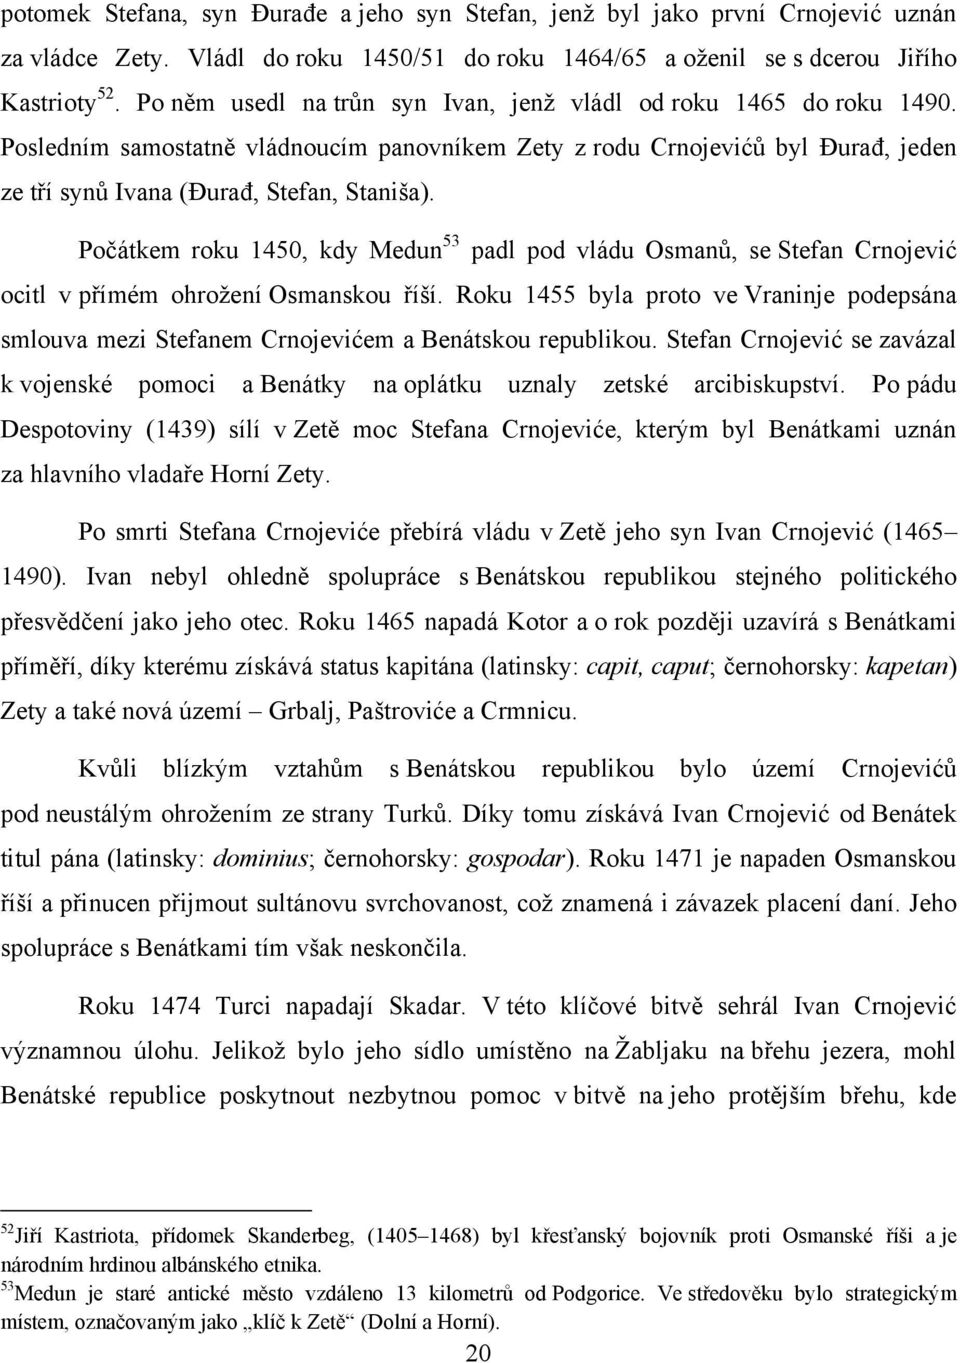 Poĉátkem roku 1450, kdy Medun 53 padl pod vládu Osmanů, se Stefan Crnojević ocitl v přímém ohroţení Osmanskou říší.